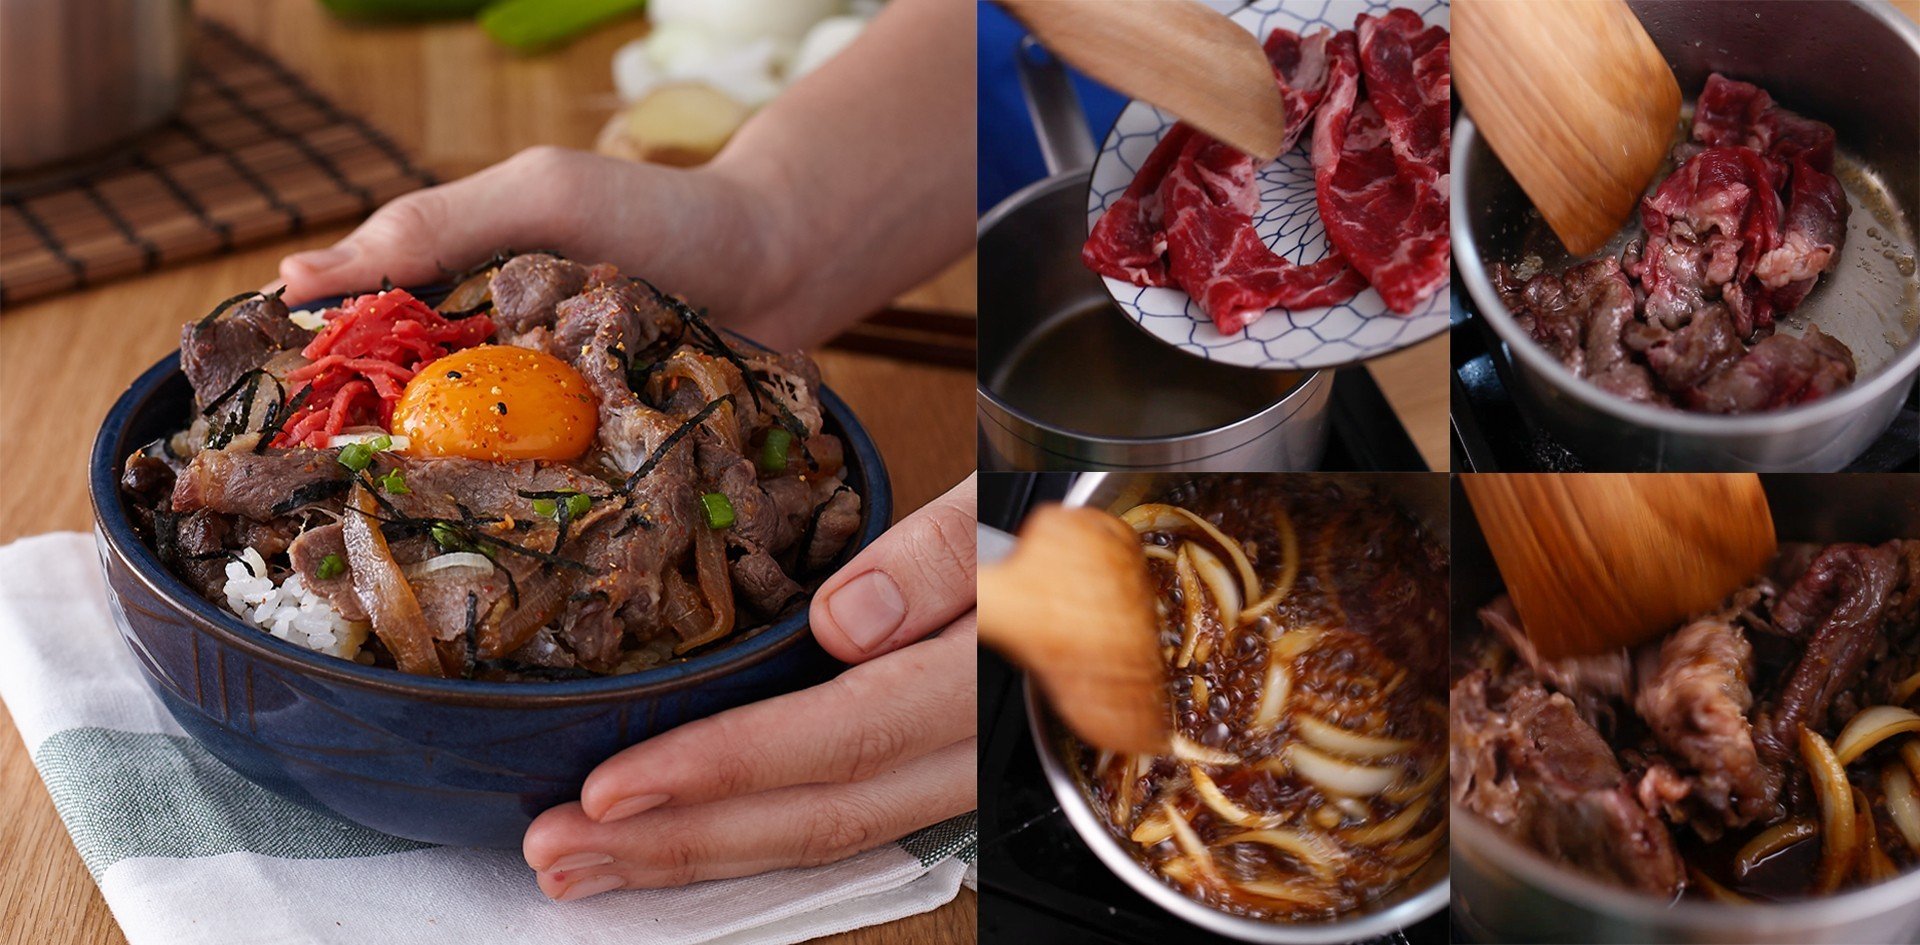 วิธีทำ “ข้าวหน้าเนื้อ” เมนูอาหารญี่ปุ่นยอดฮิต รสละมุน แถมอิ่มท้อง!